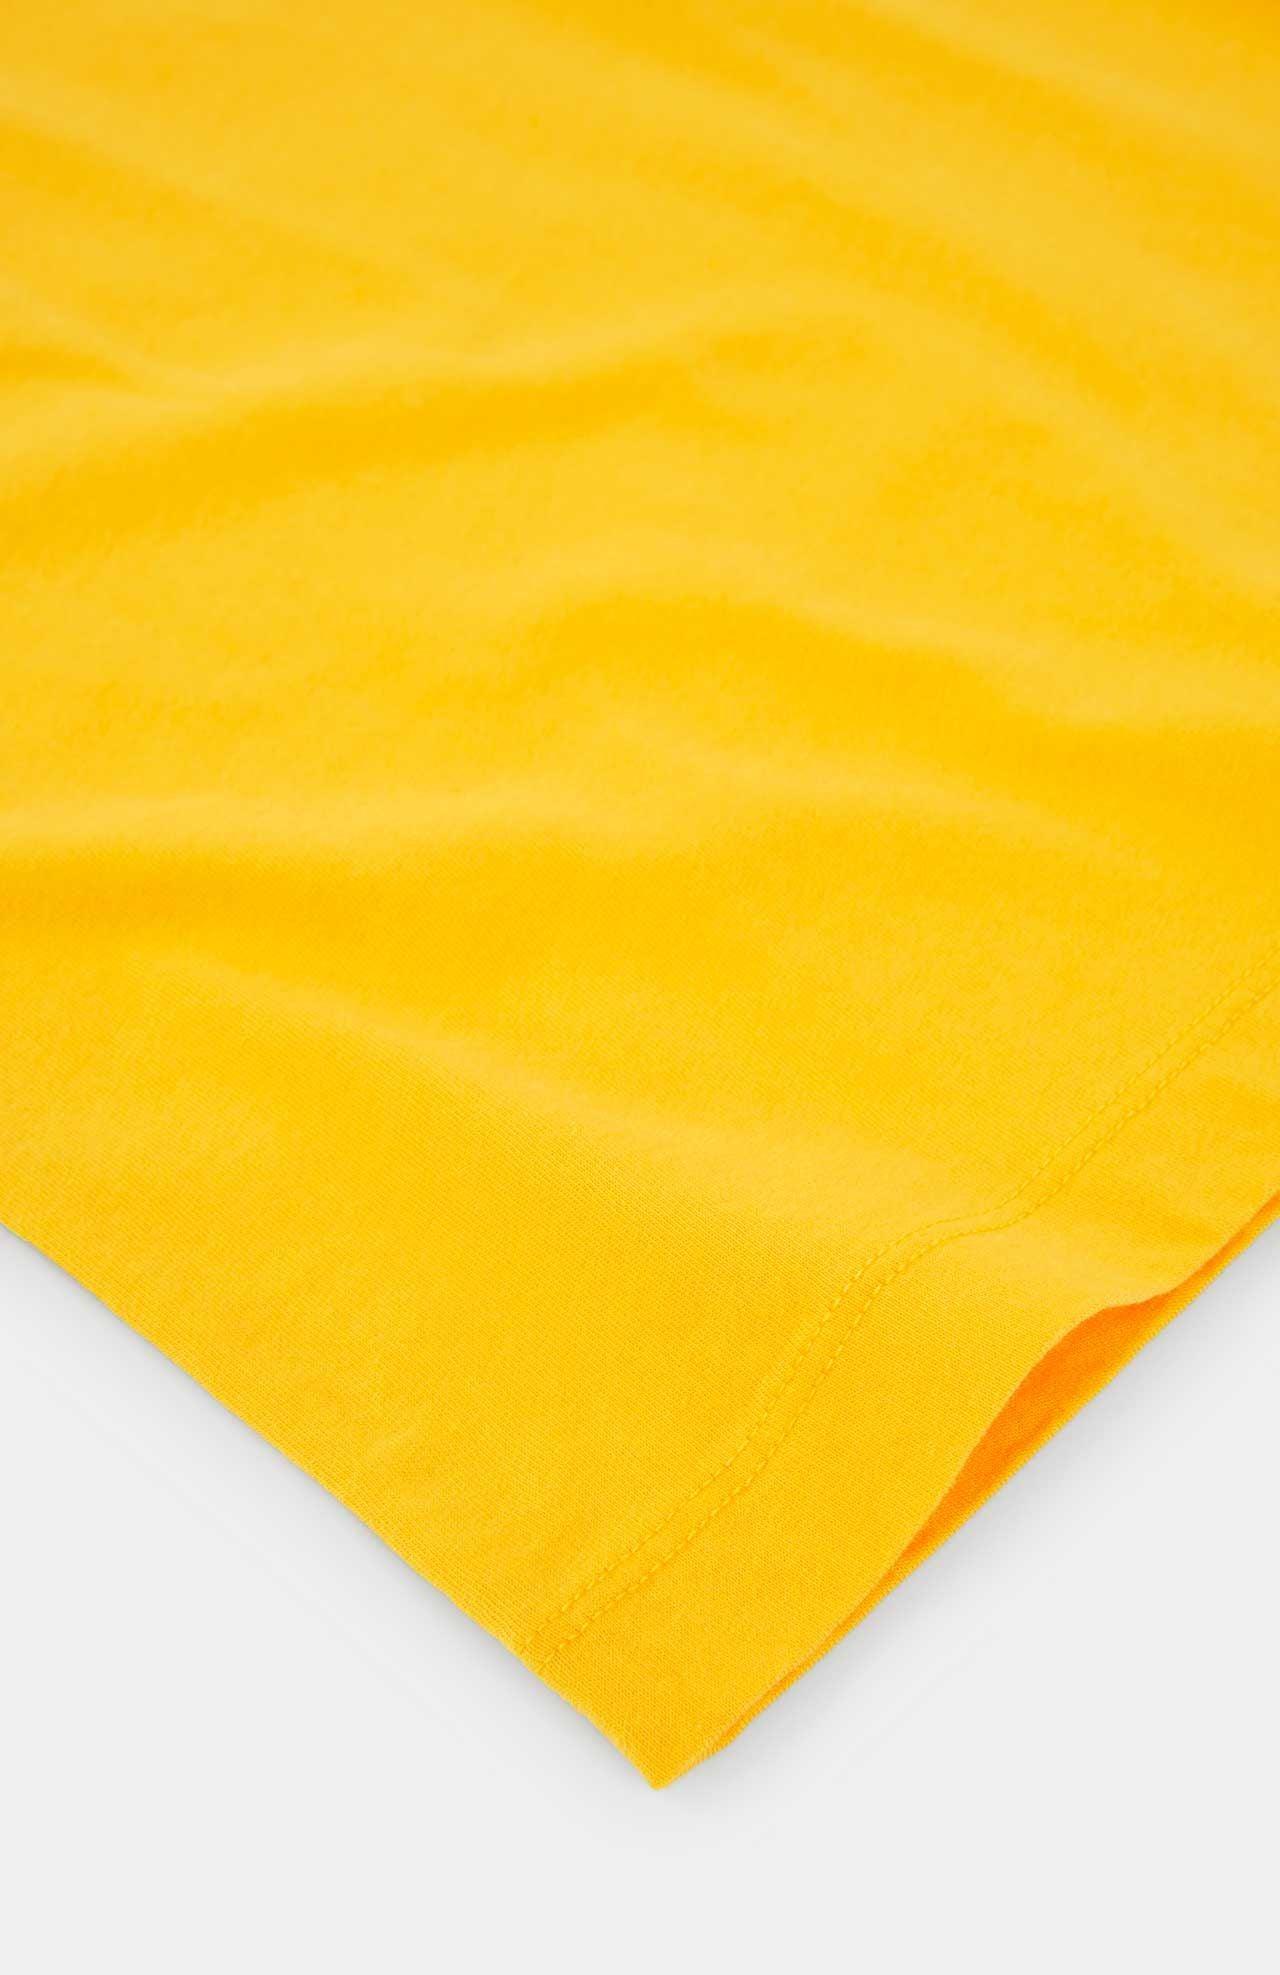 Camiseta Loreak Mendian Marga Fine Yellow - ECRU